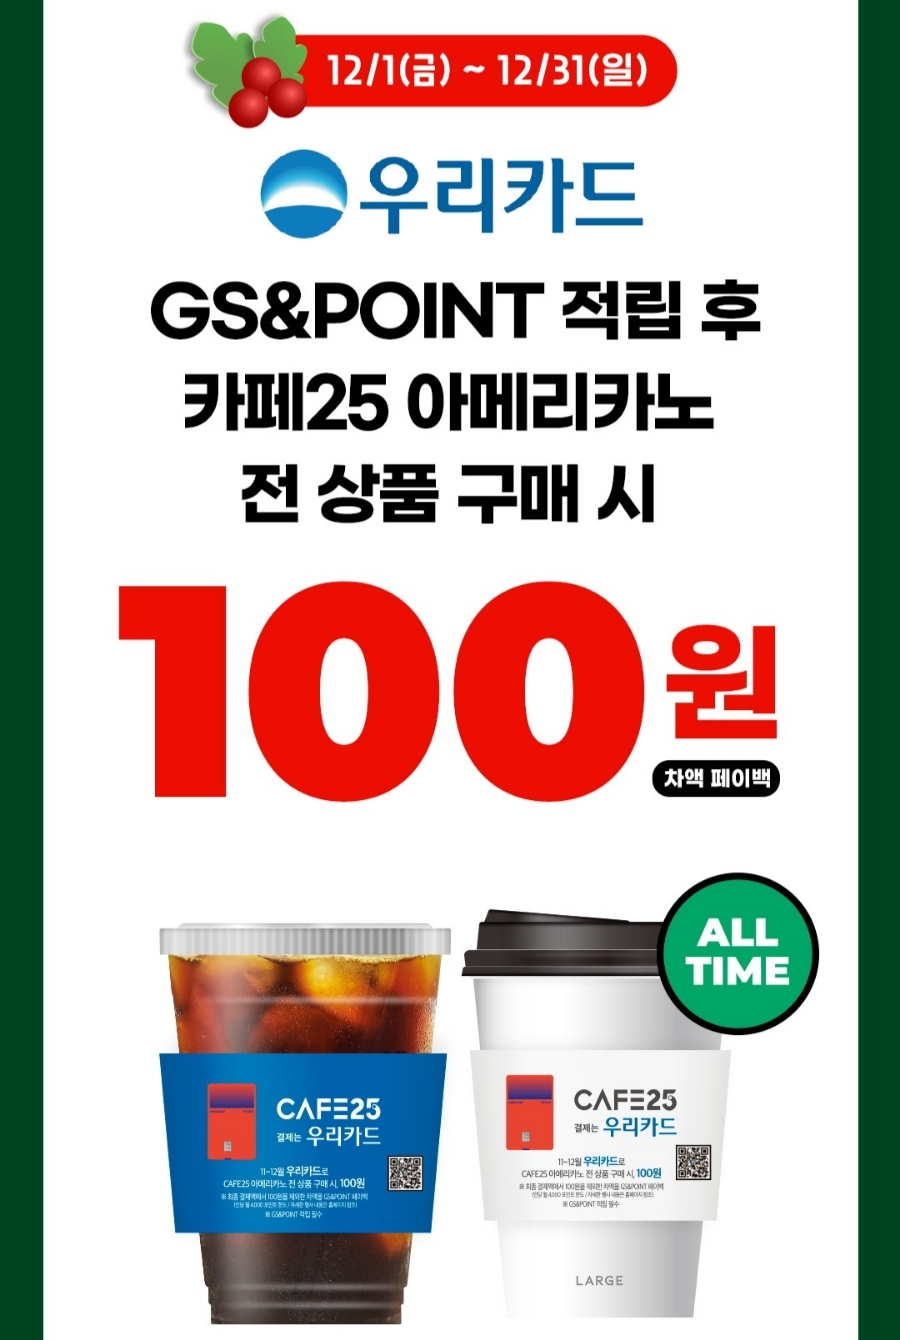 GS25편의점 카페 커피 우리카드 100원, 구독/비씨조조 중복